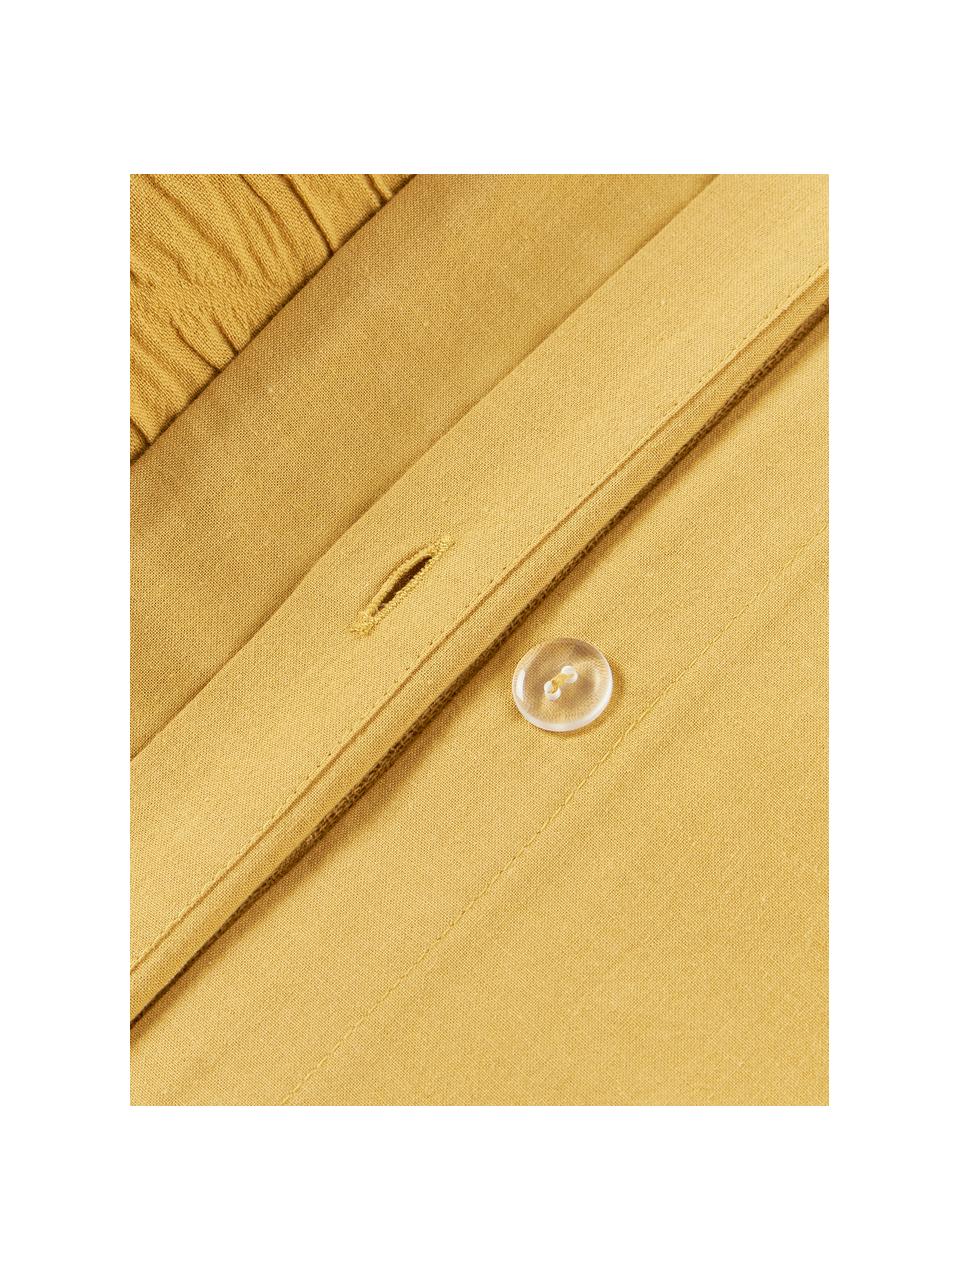 Housse de couette en coton avec surface texturée et ourlet Jonie, Jaune moutarde, larg. 200 x long. 200 cm